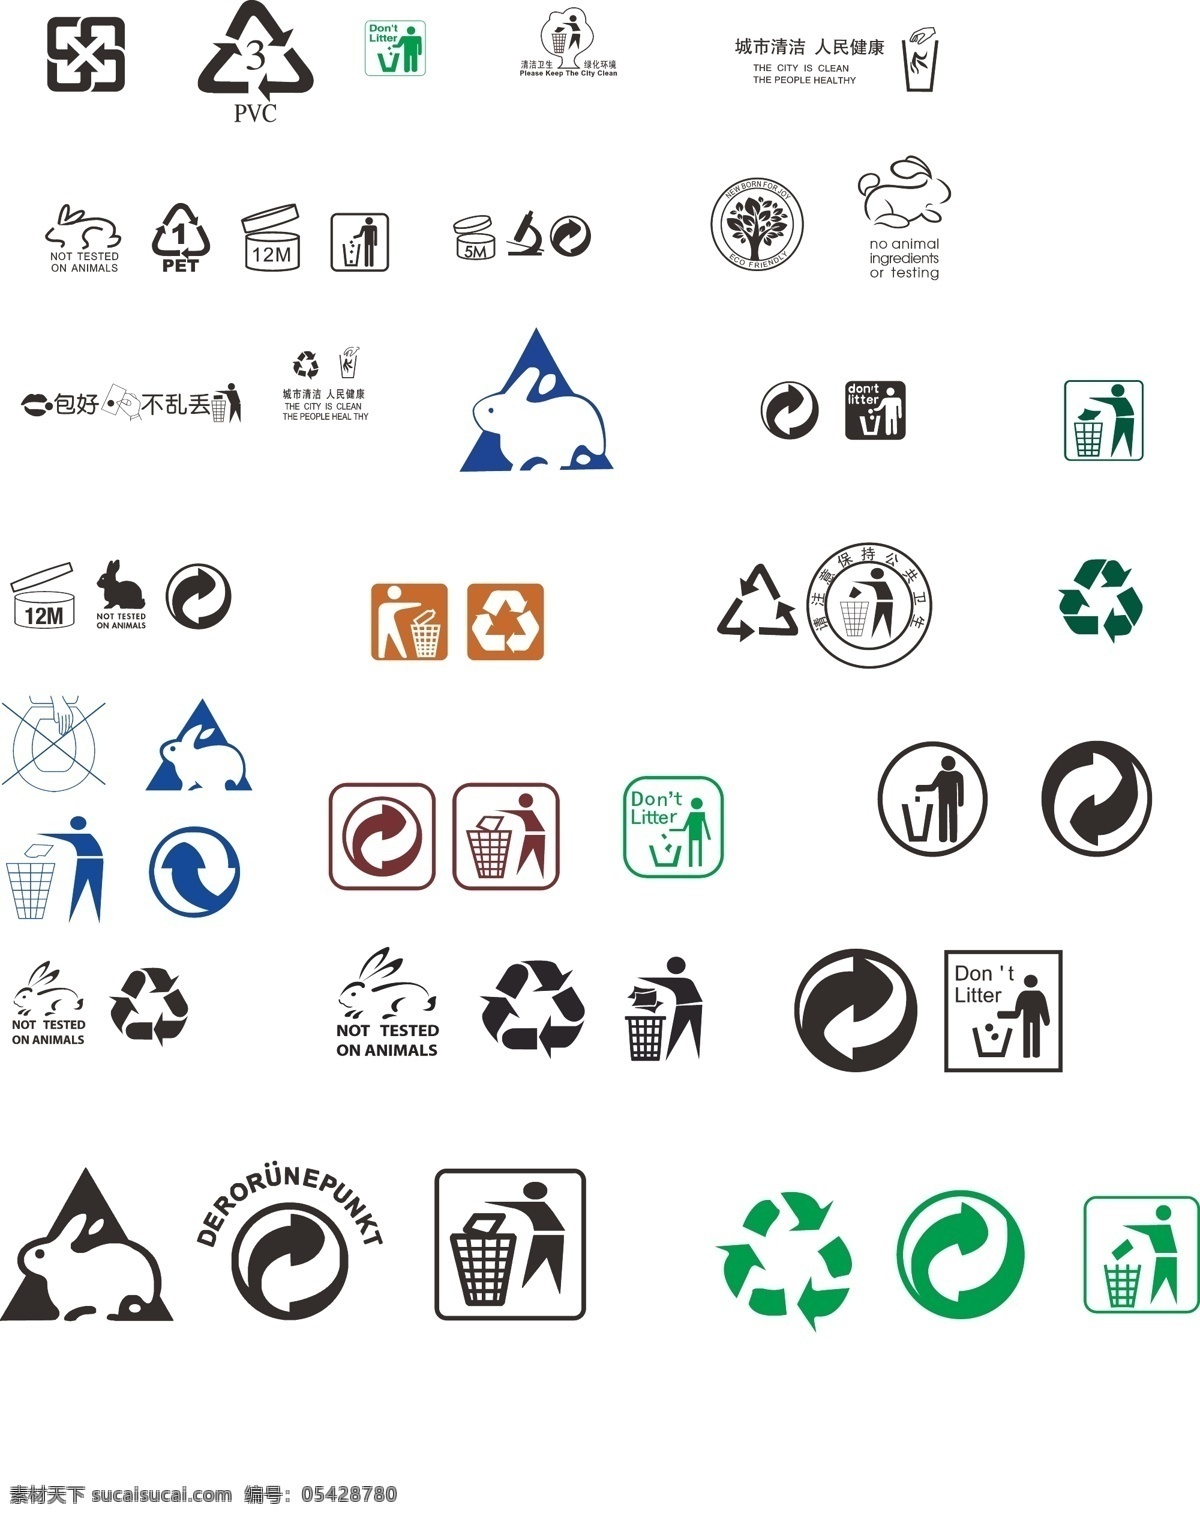 环保回收标志 回收标志 环保标志 回收循环标志 垃圾桶 循环标志 标志图标 公共标识标志